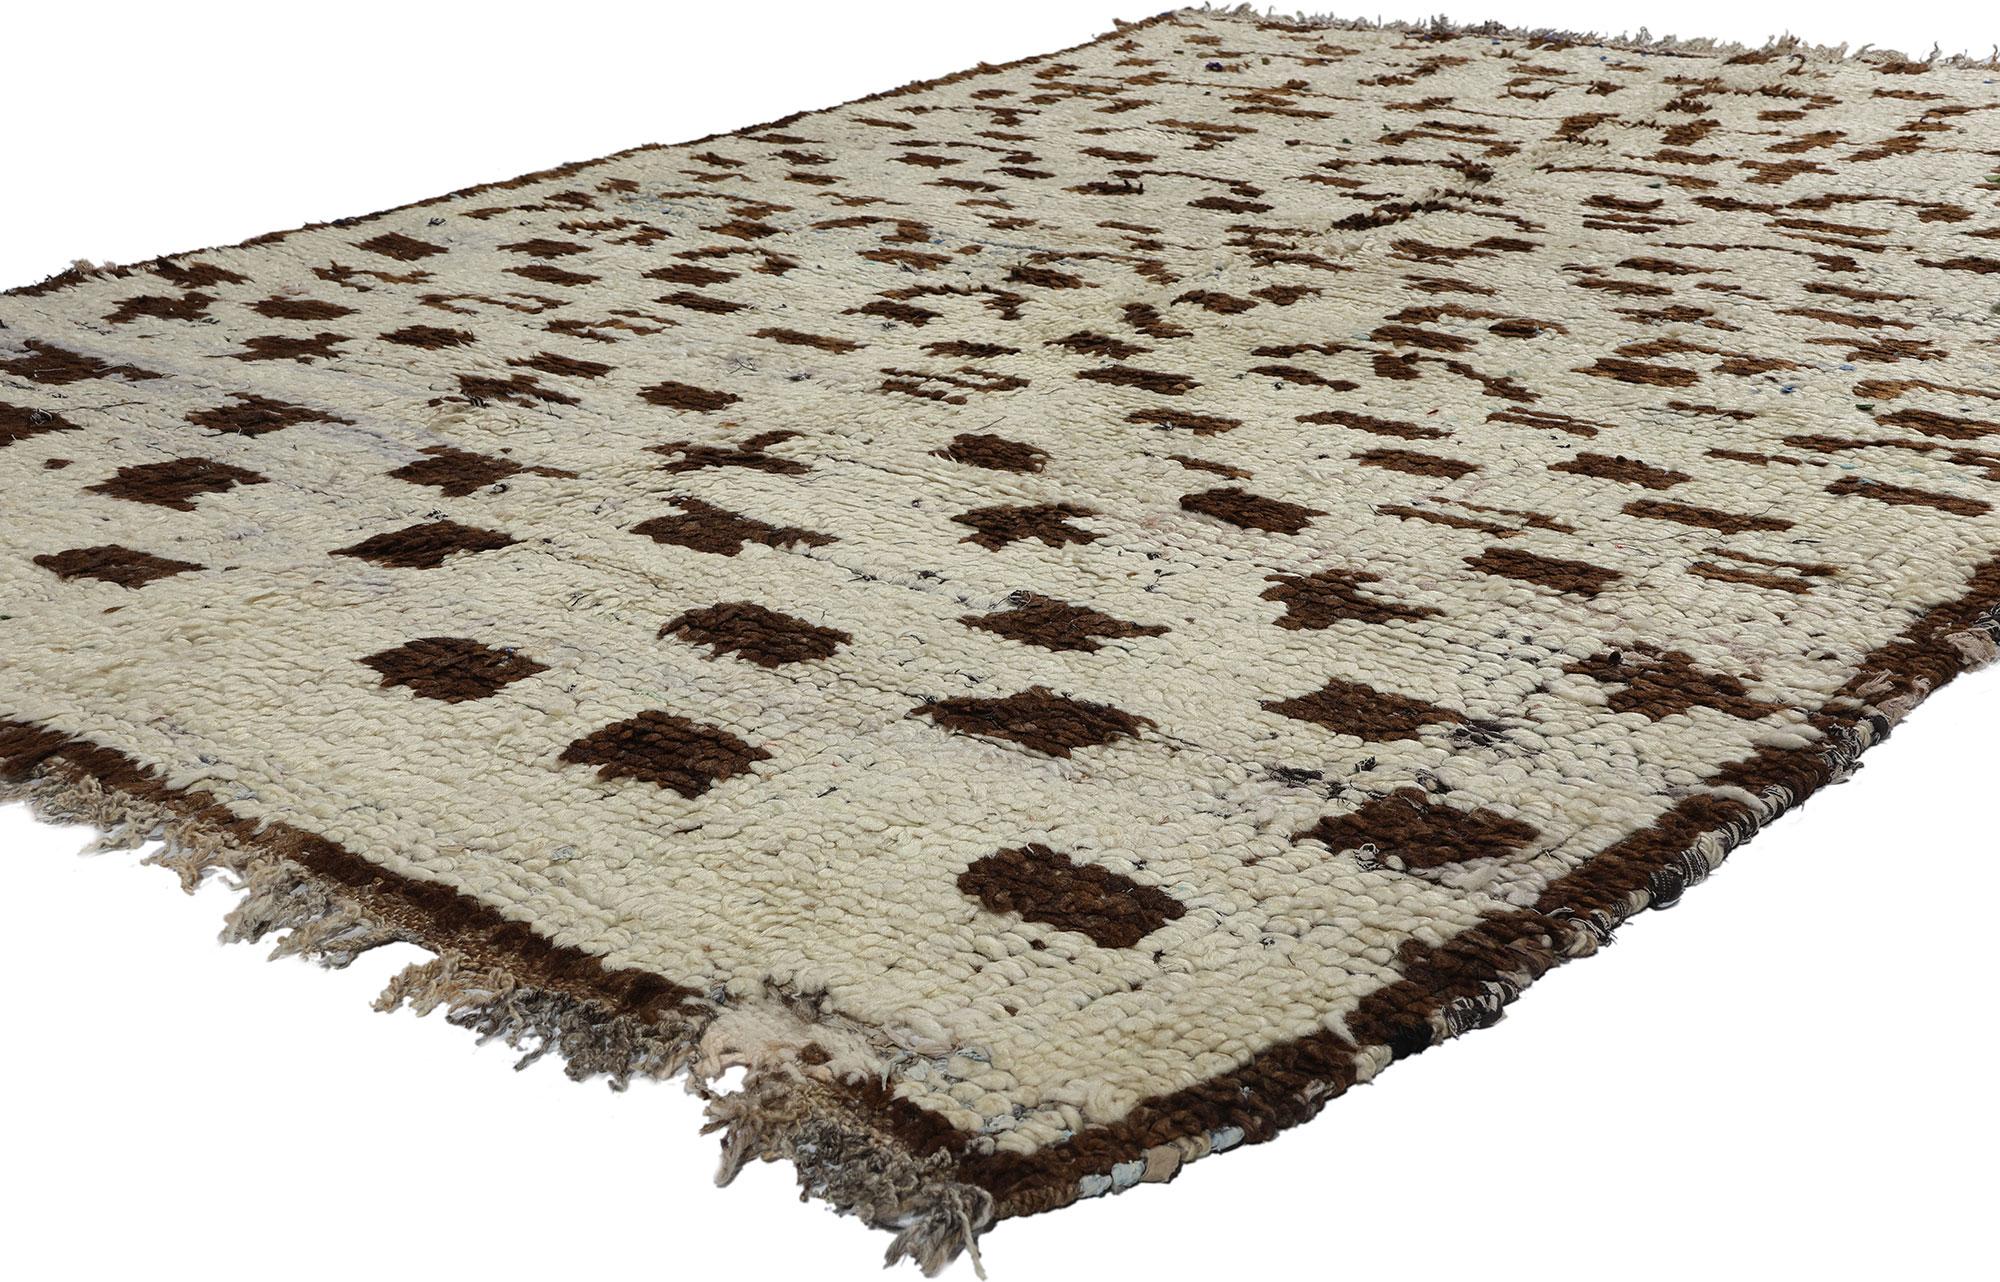 21817 Vintage Boucherouite Marokkanischer Azilal-Teppich, 05'04 x 08'04. Die Azilal-Teppiche, auch als Azilal-Boucherouite-Teppiche bekannt, sind ein Beispiel für nachhaltige Handwerkskunst aus der Region Azilal im marokkanischen Atlasgebirge. Diese